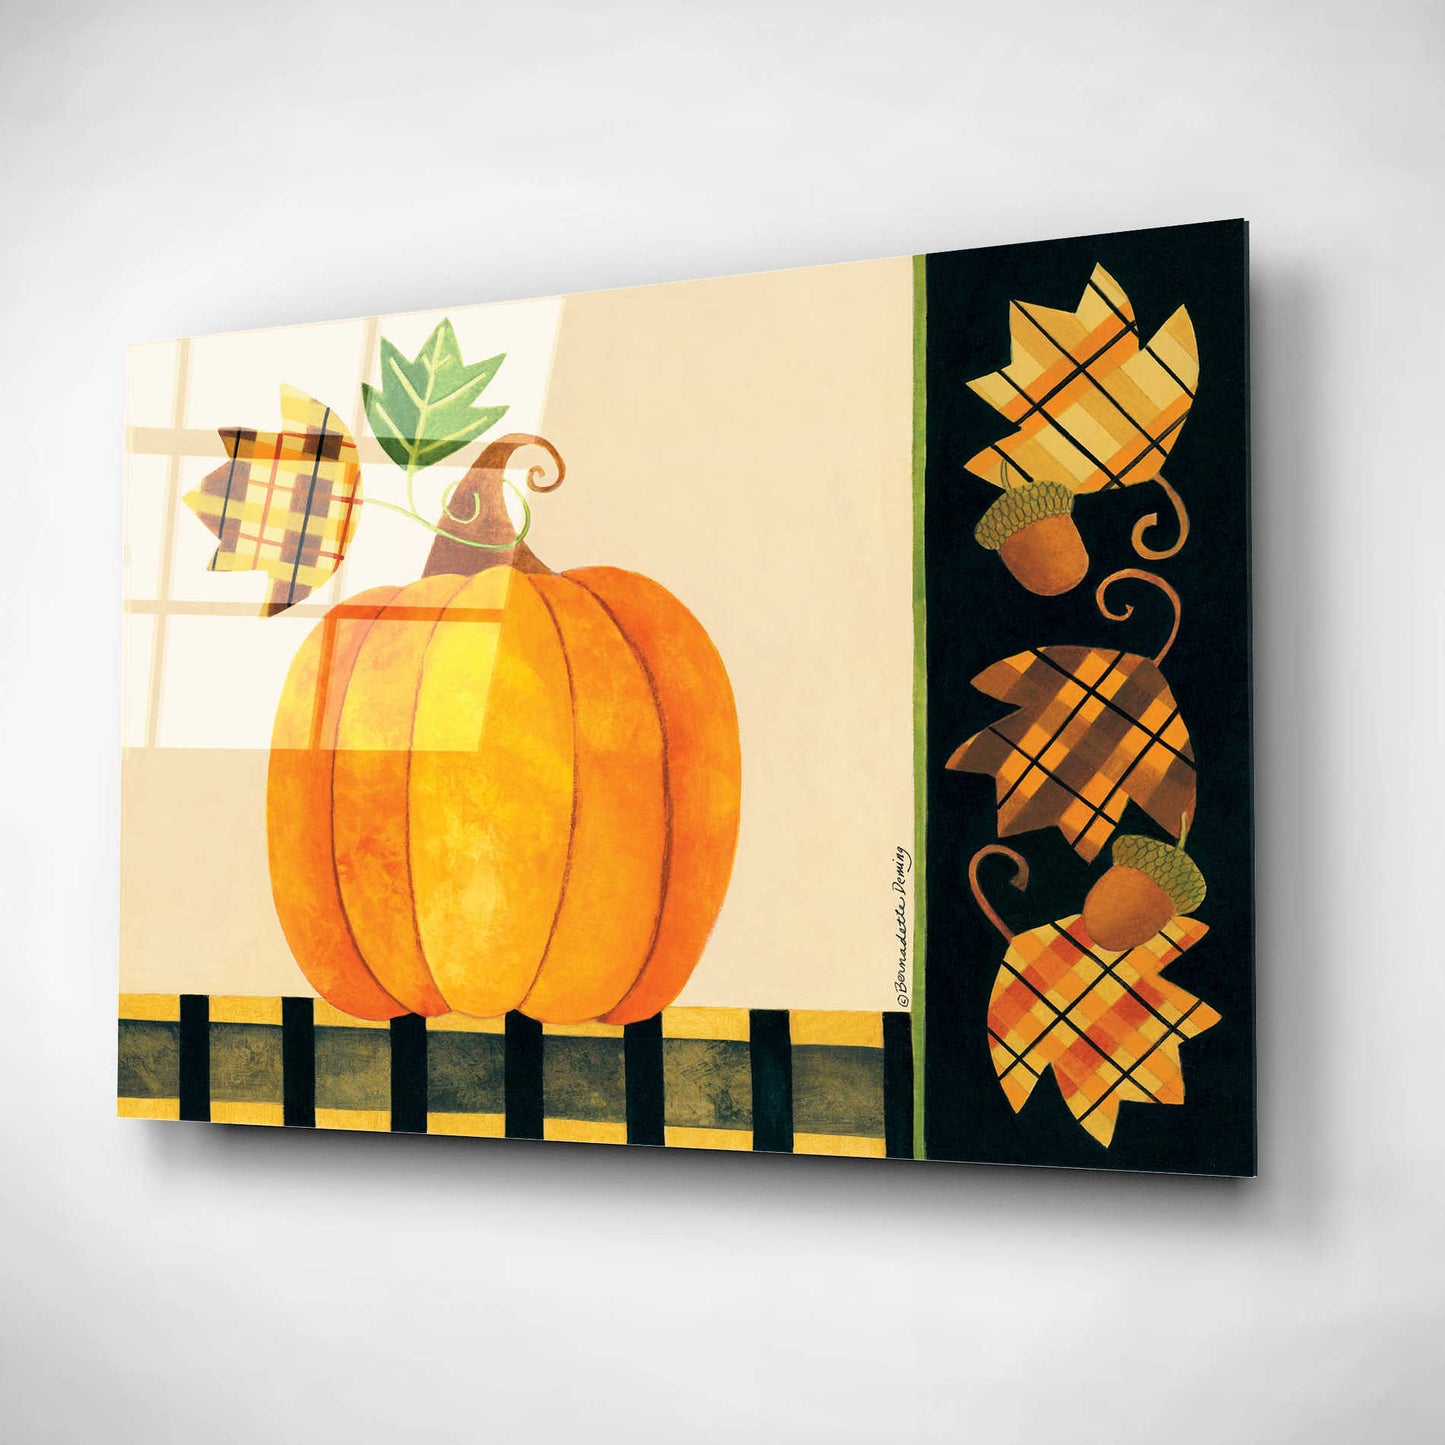 Epic Art "Pumpkin" by Bernadette Deming, Acrylic Glass Wall Art,24x16